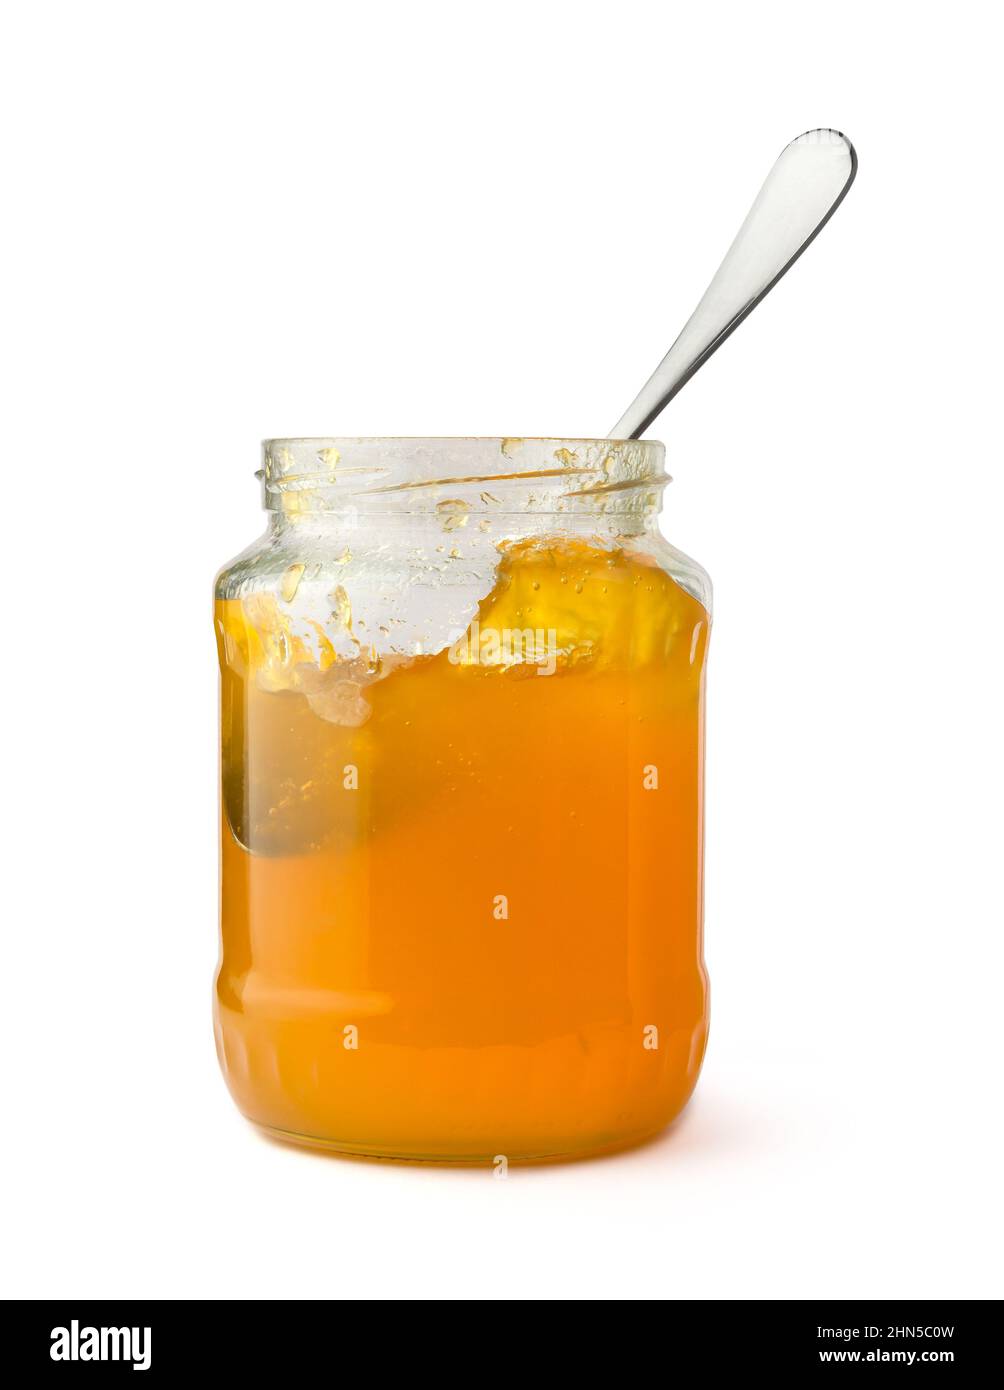 bottiglia di marmellata di frutta con un cucchiaio, isolato su sfondo bianco, primo piano Foto Stock